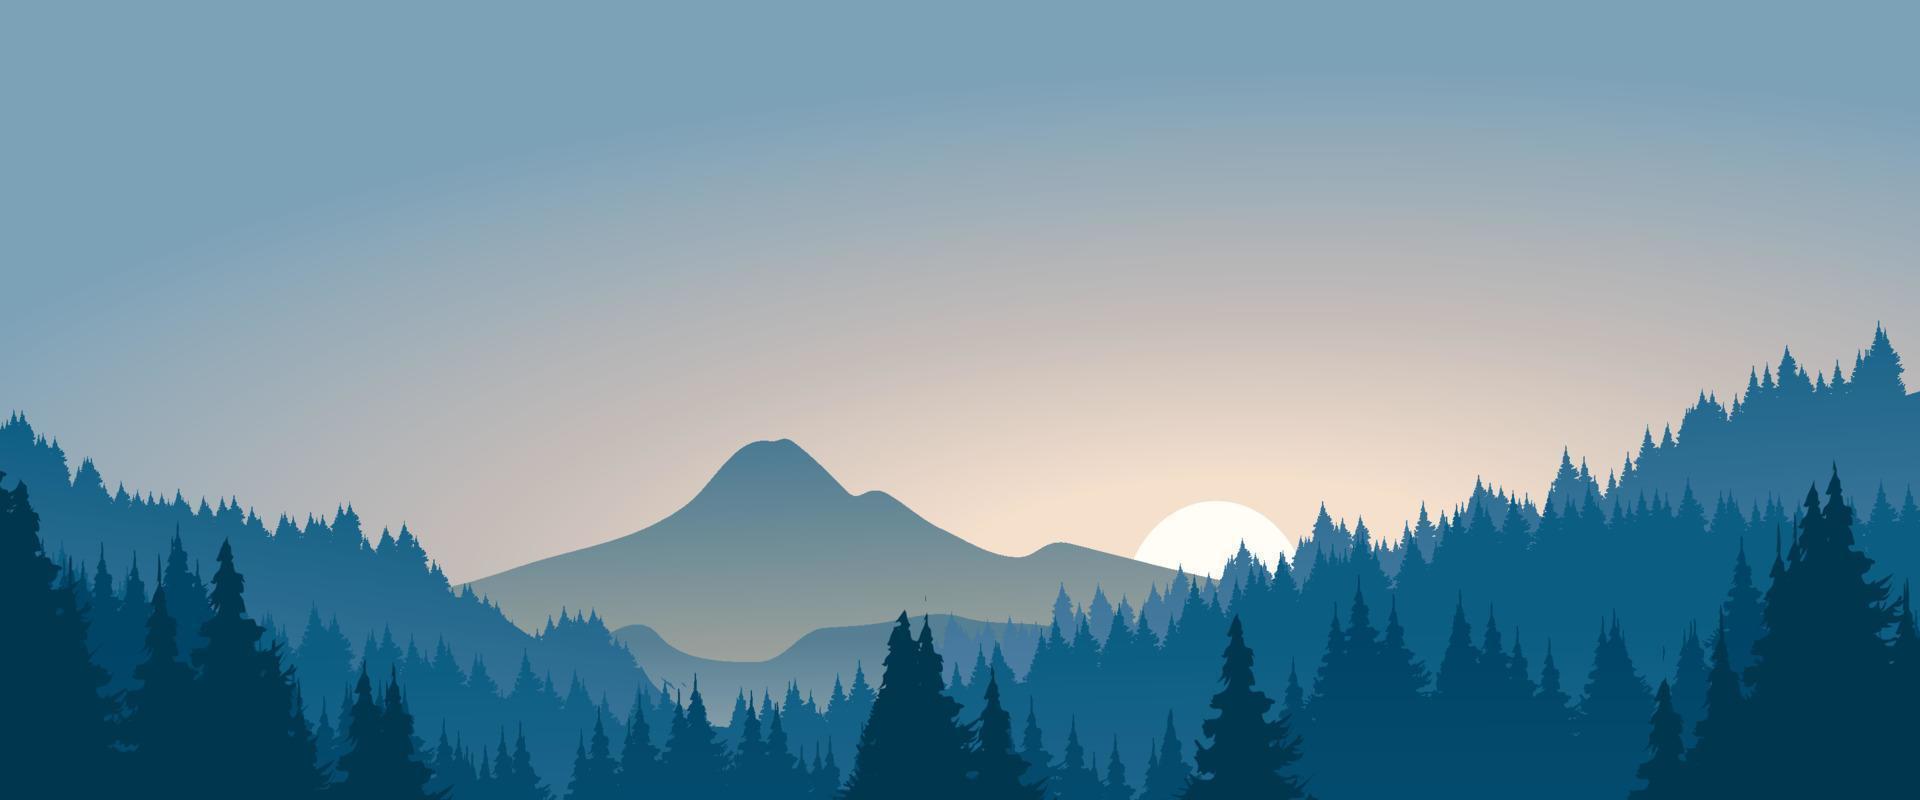 ilustração vetorial de paisagem de montanha com floresta de pinheiros. cenário de silhueta de montanha nebulosa vetor